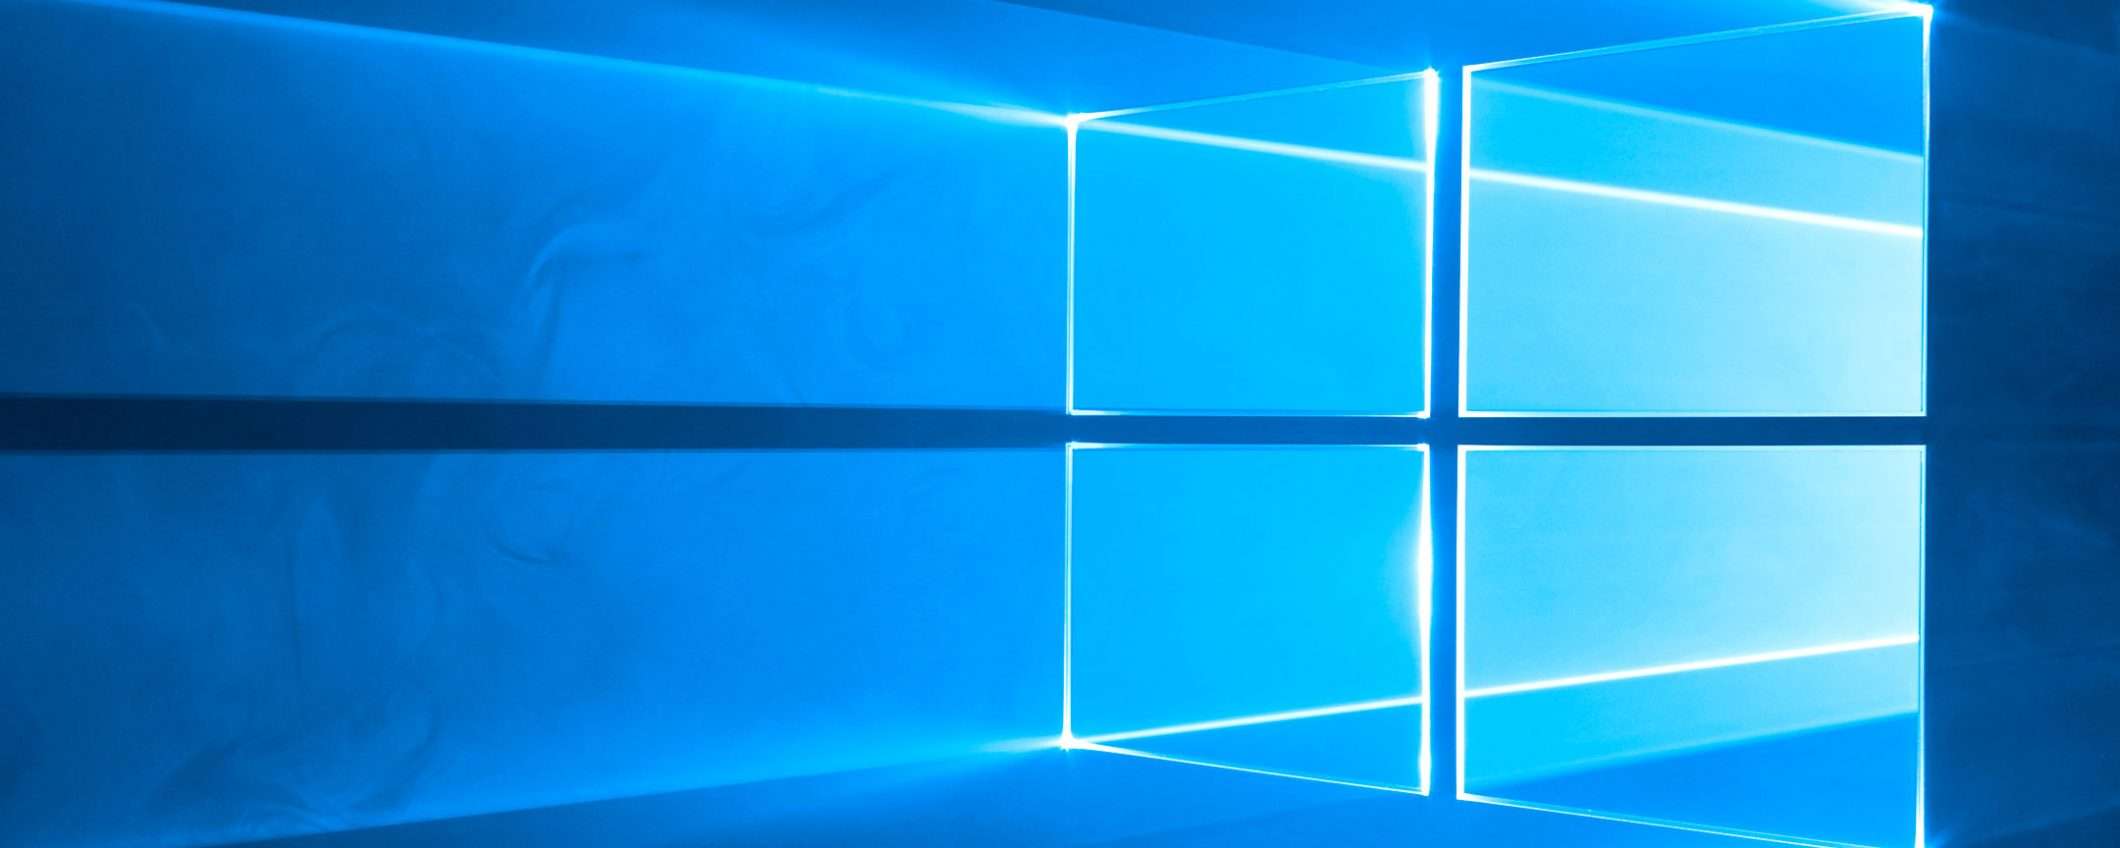 Secured-core PC, hardware blindato con Windows 10